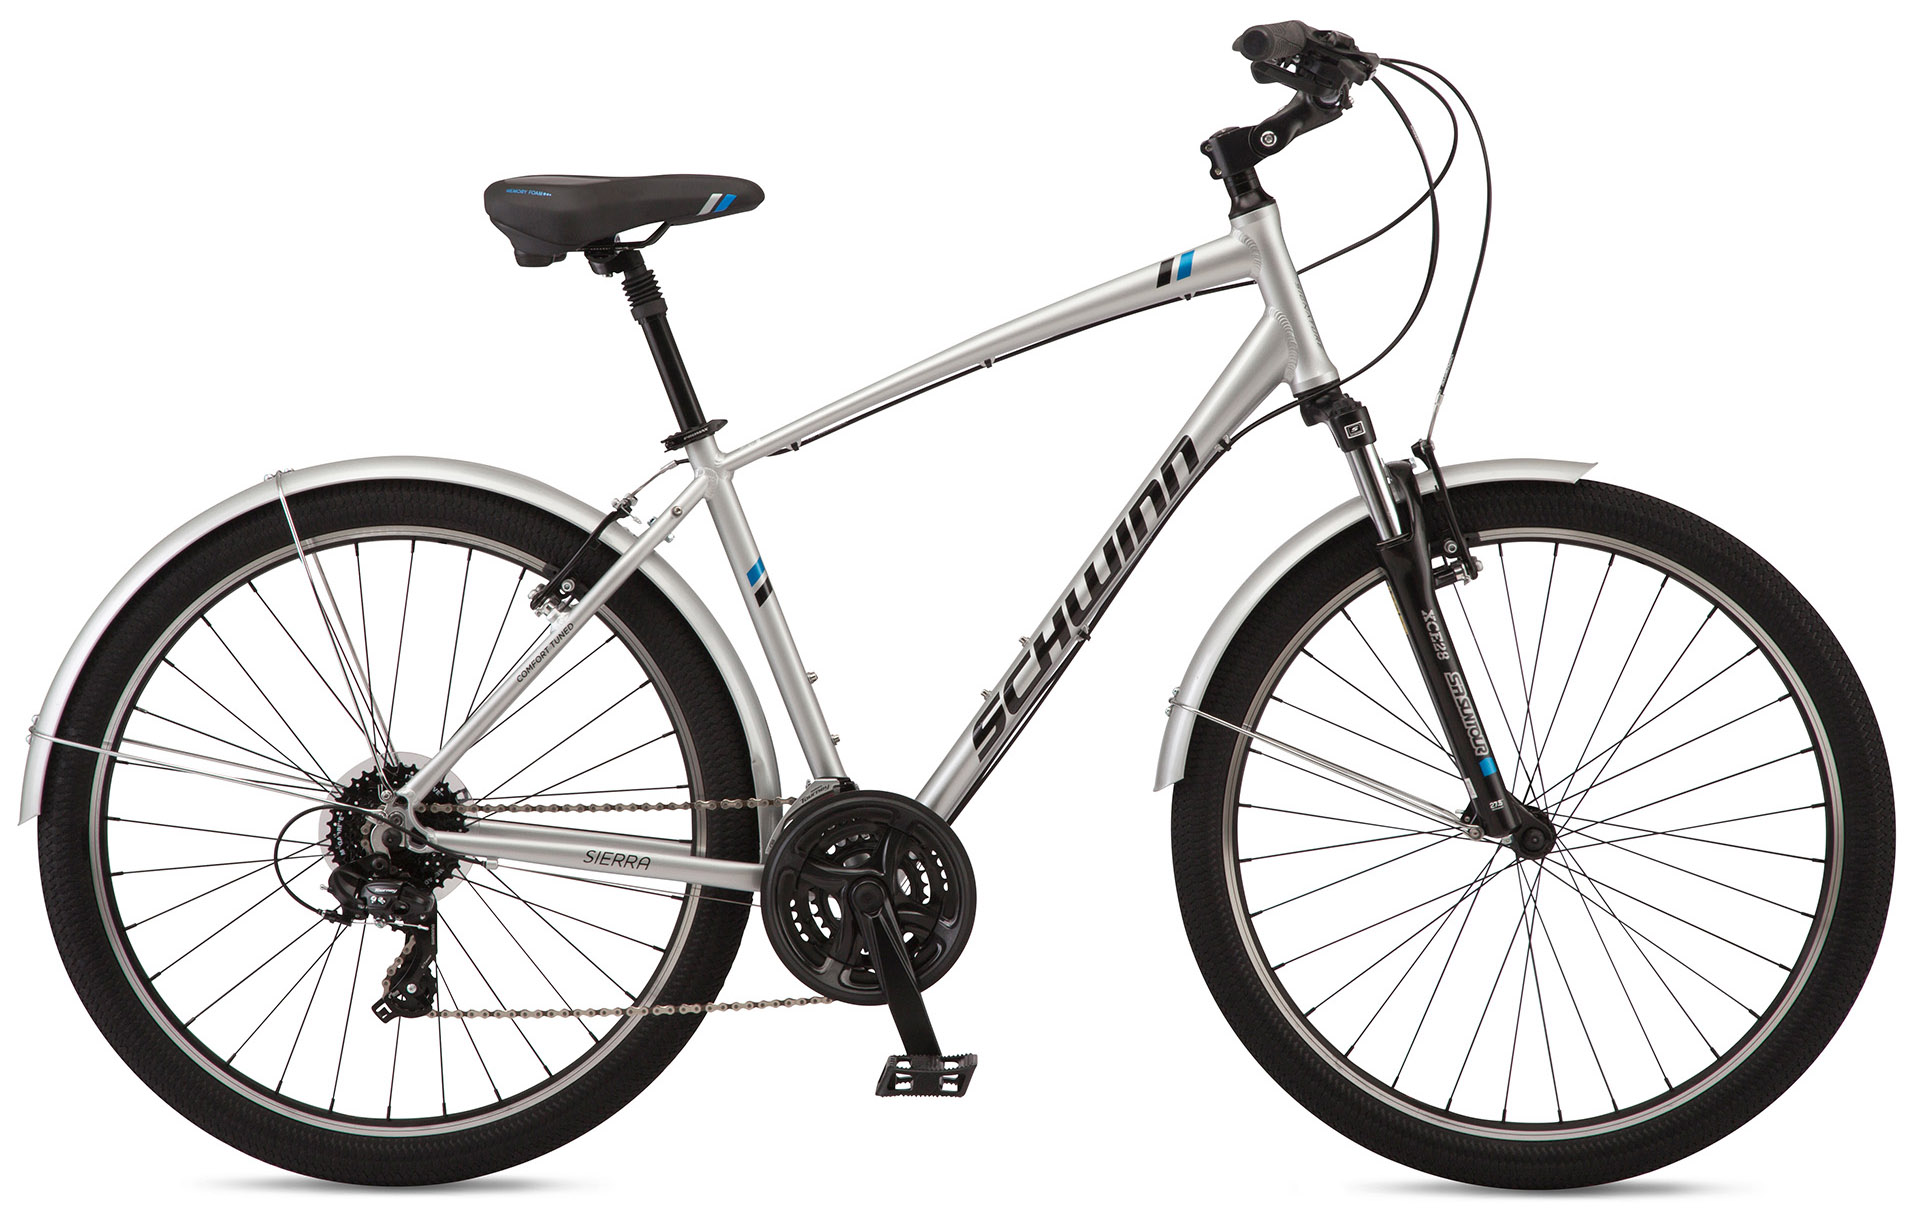  Отзывы о Городском велосипеде Schwinn Sierra 27,5 2020